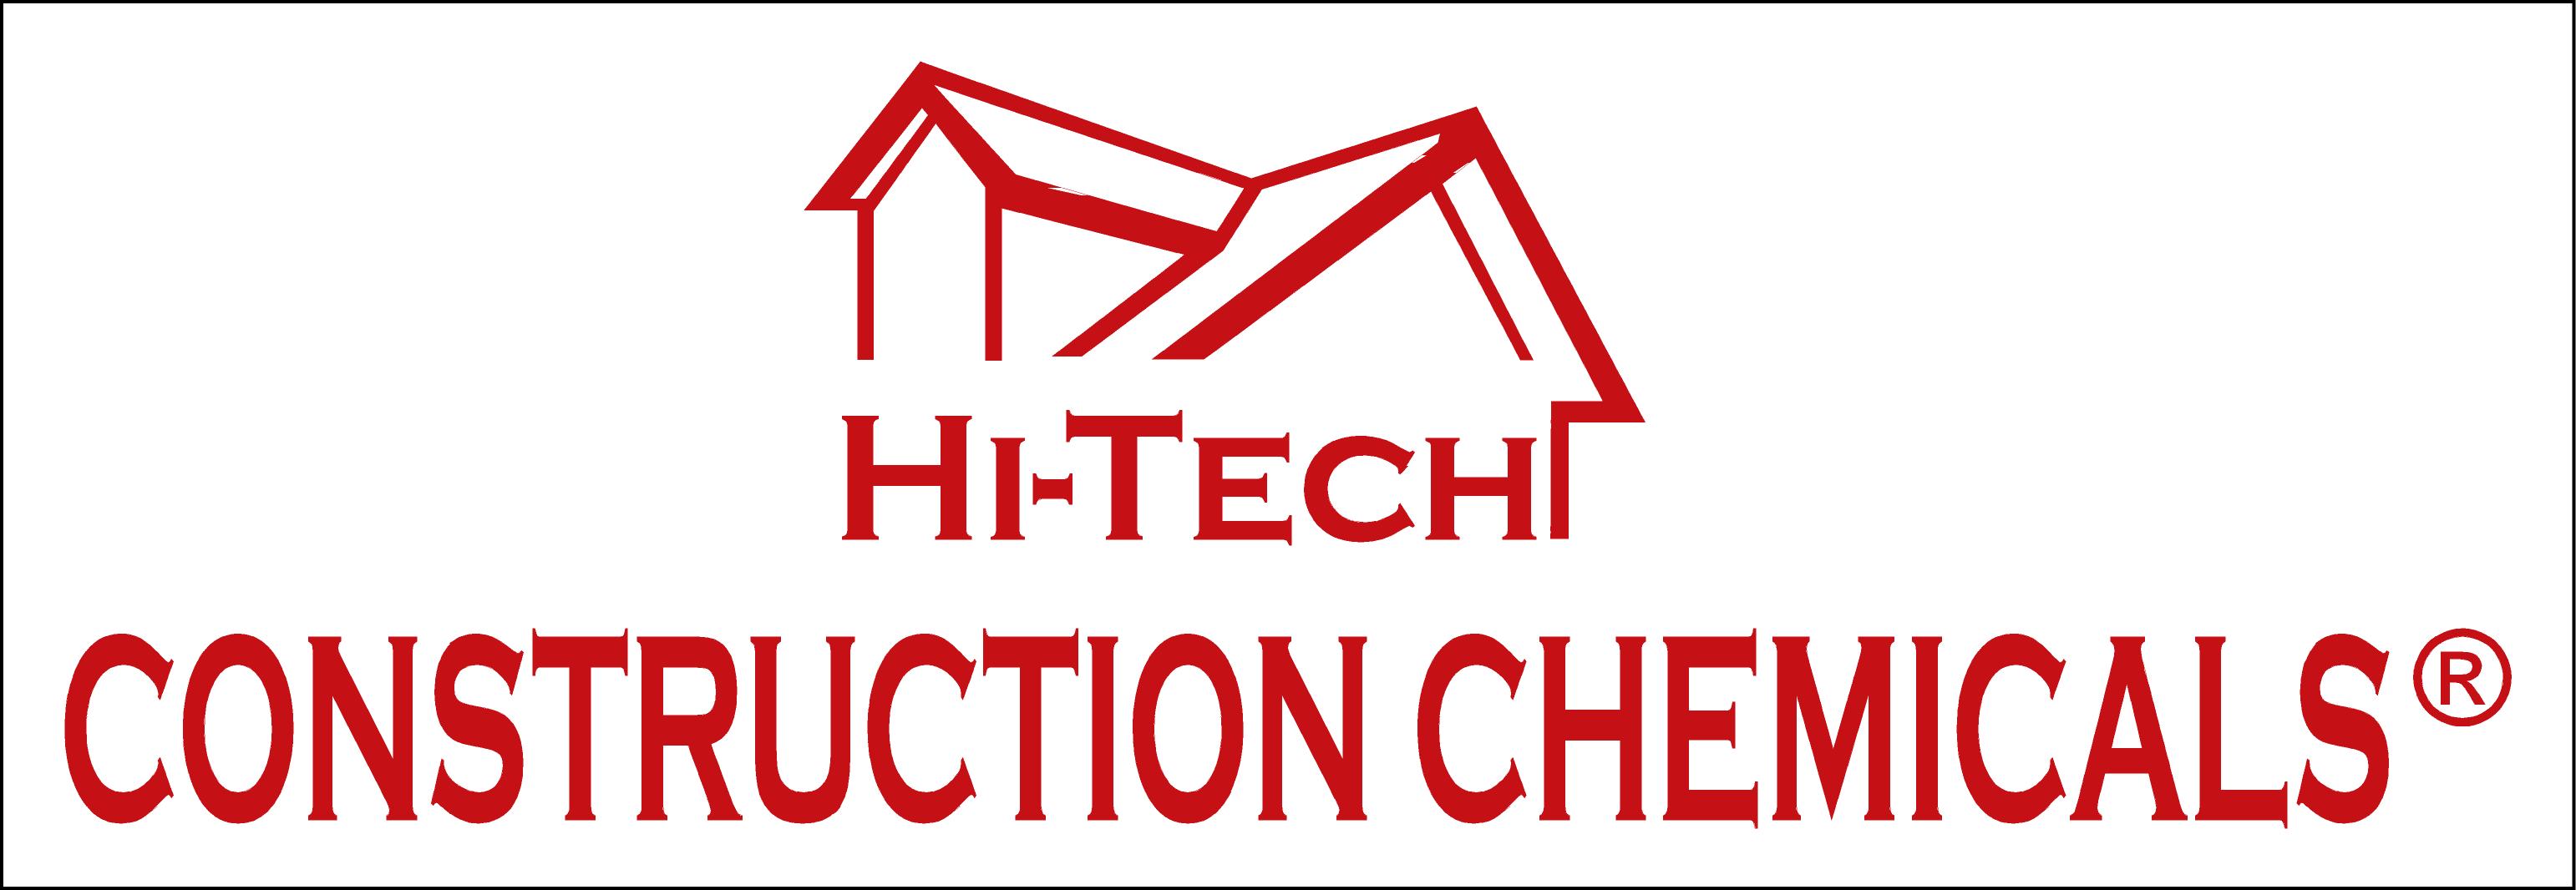 Hi-Tech Construction Chemicals